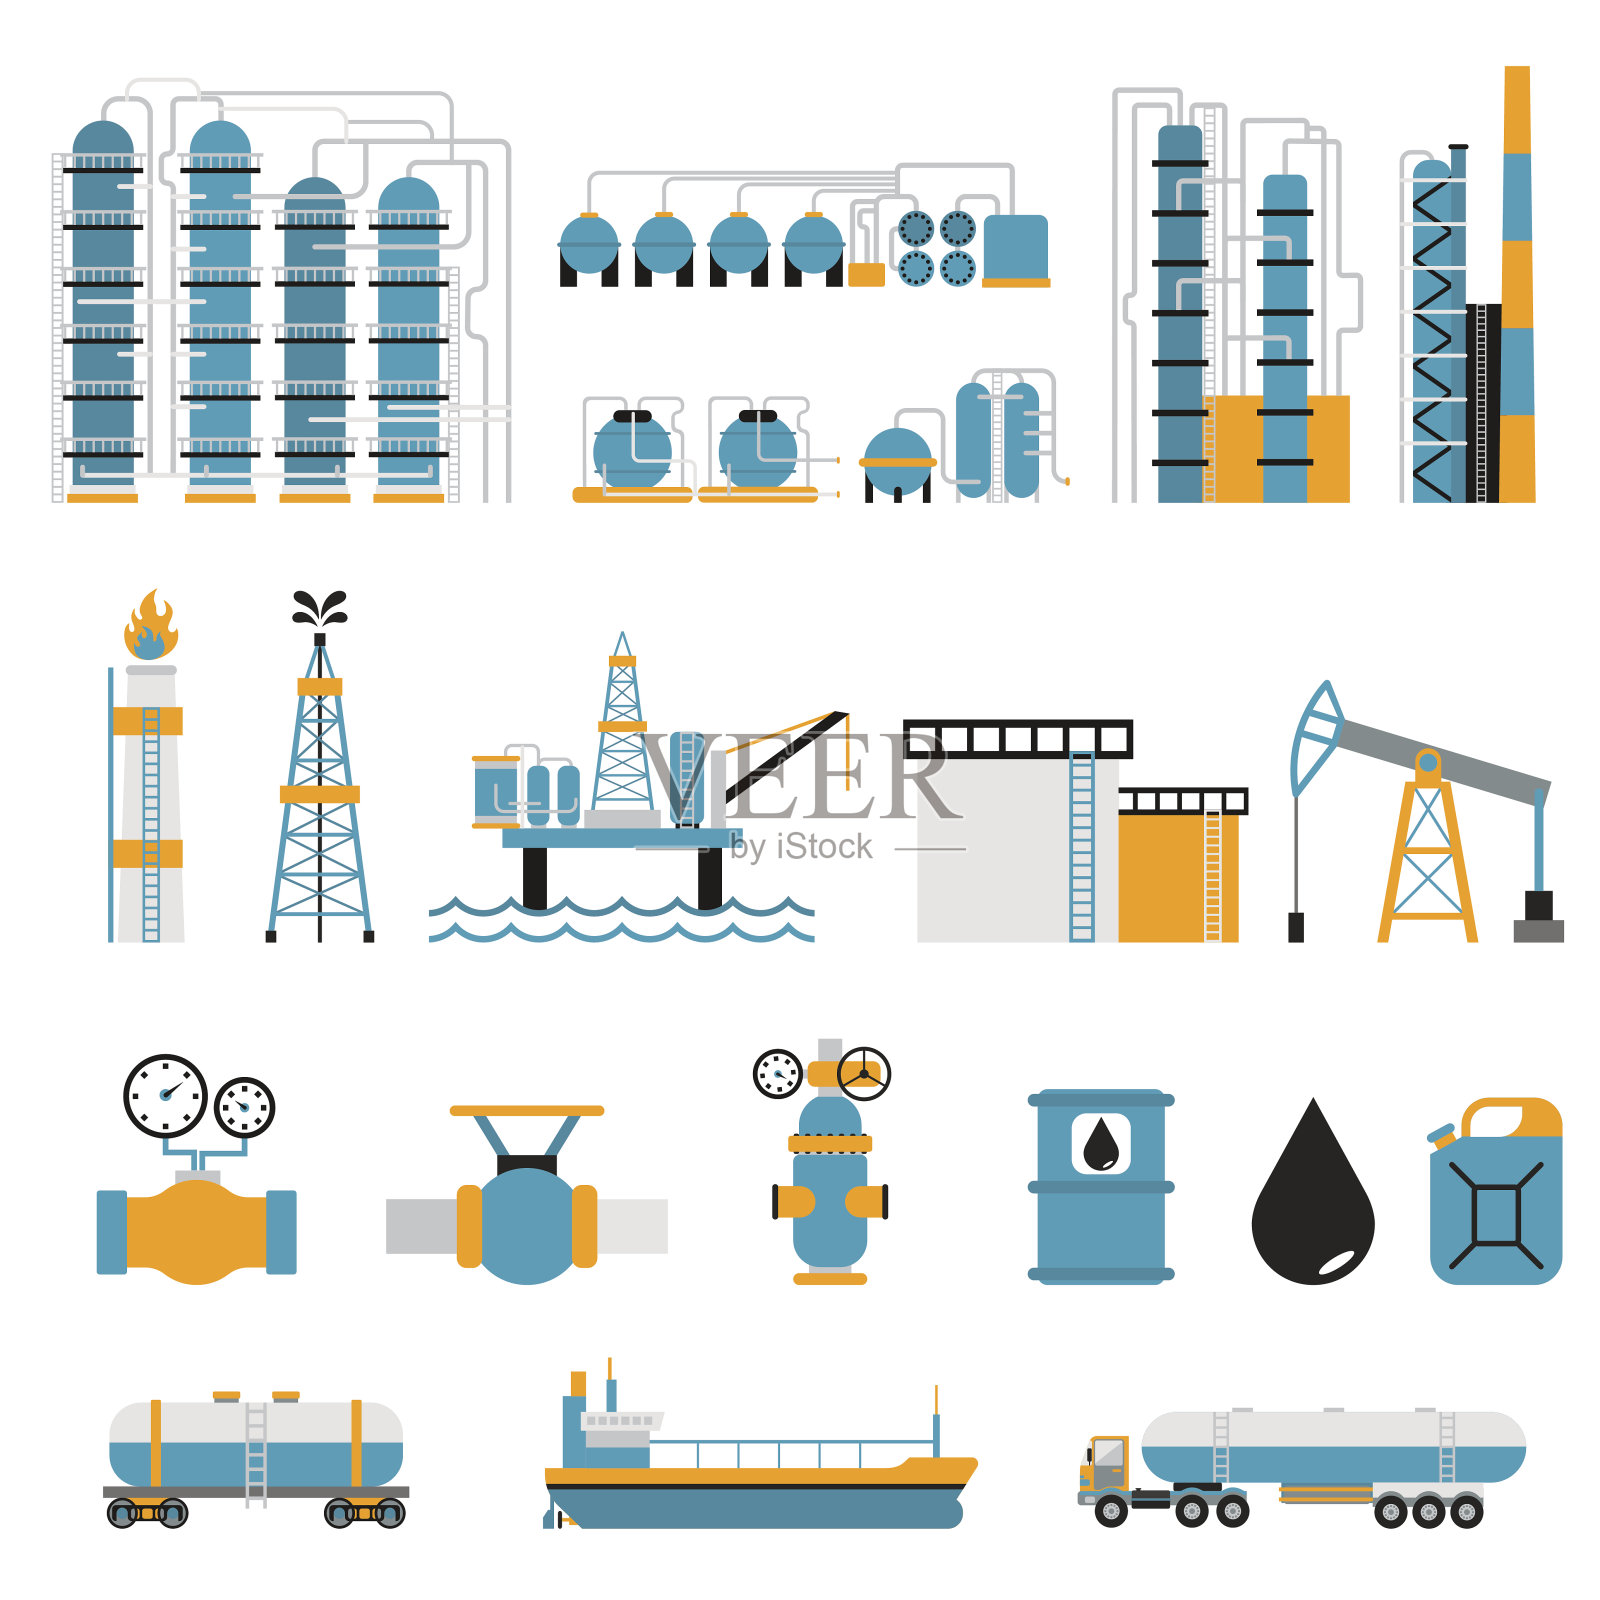 石油工业平面风格矢量符号图标素材